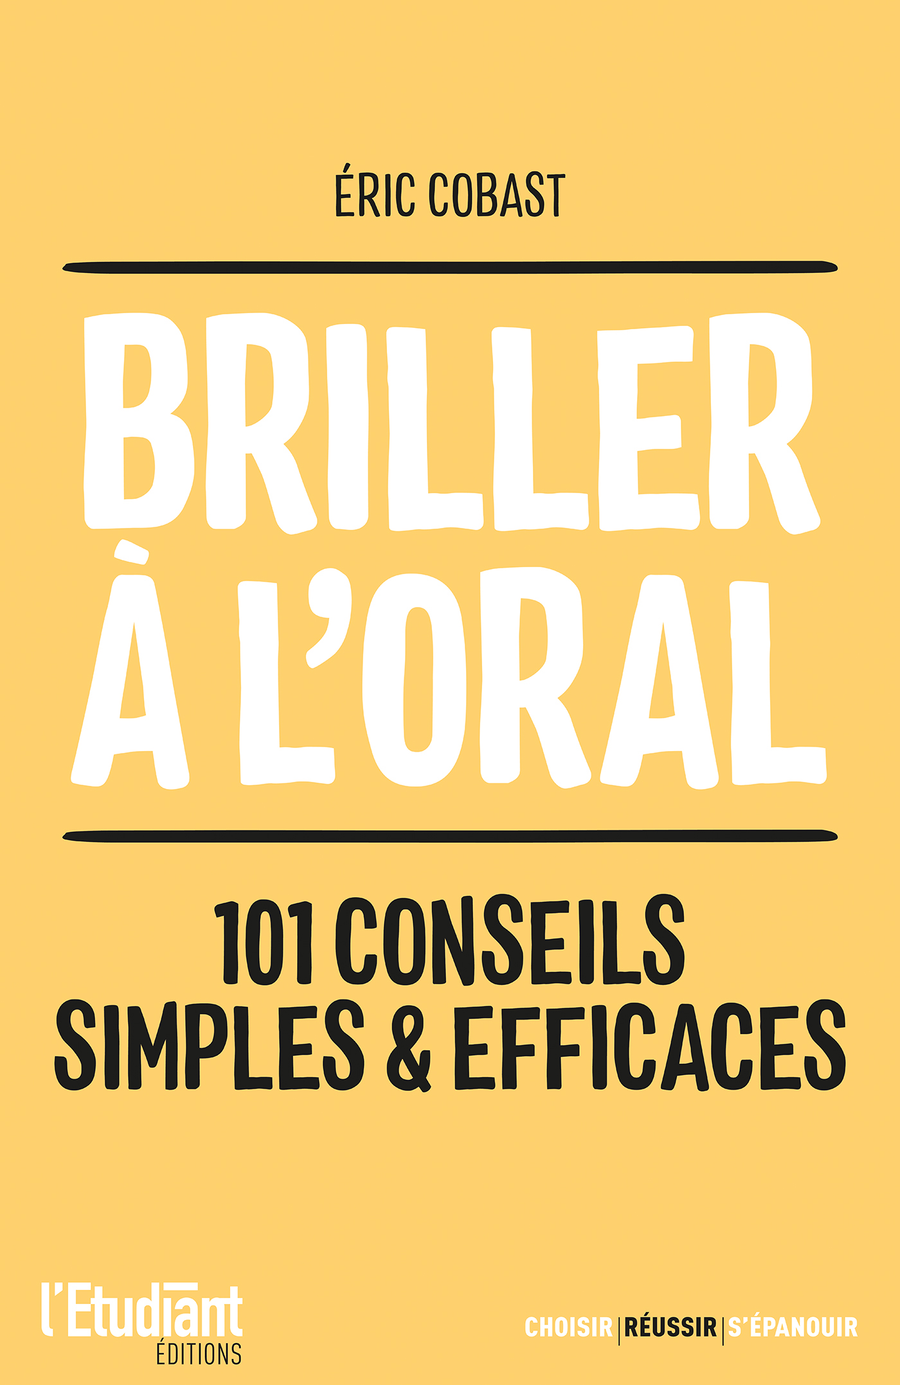 Briller à l'oral : 101 conseils simples et efficaces